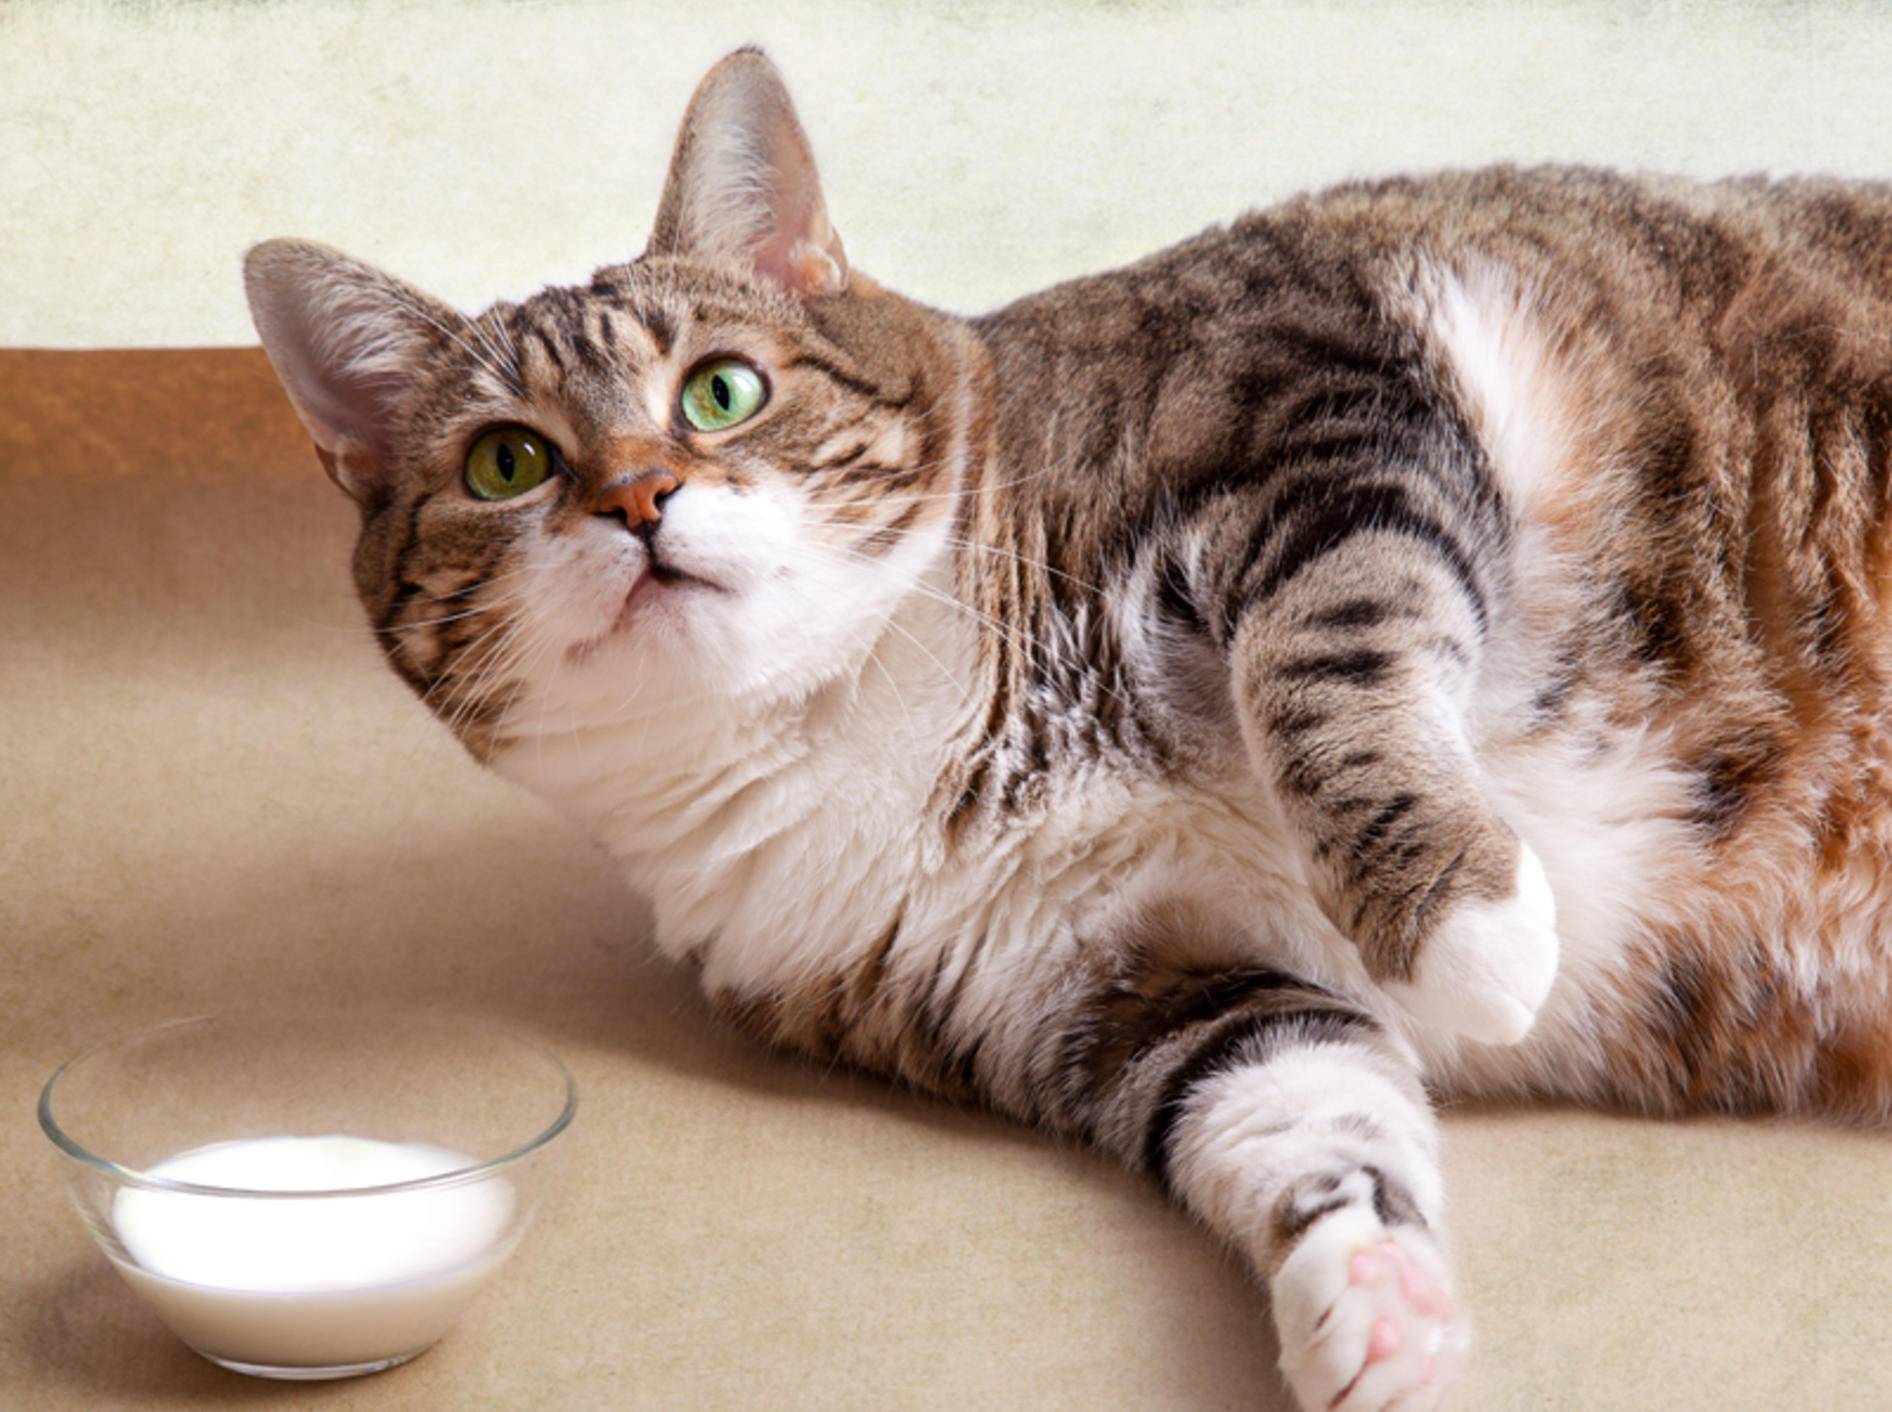 Lecker, aber leider ein Dickmacher: Katzenmilch – Shutterstock / Nailia Schwarz